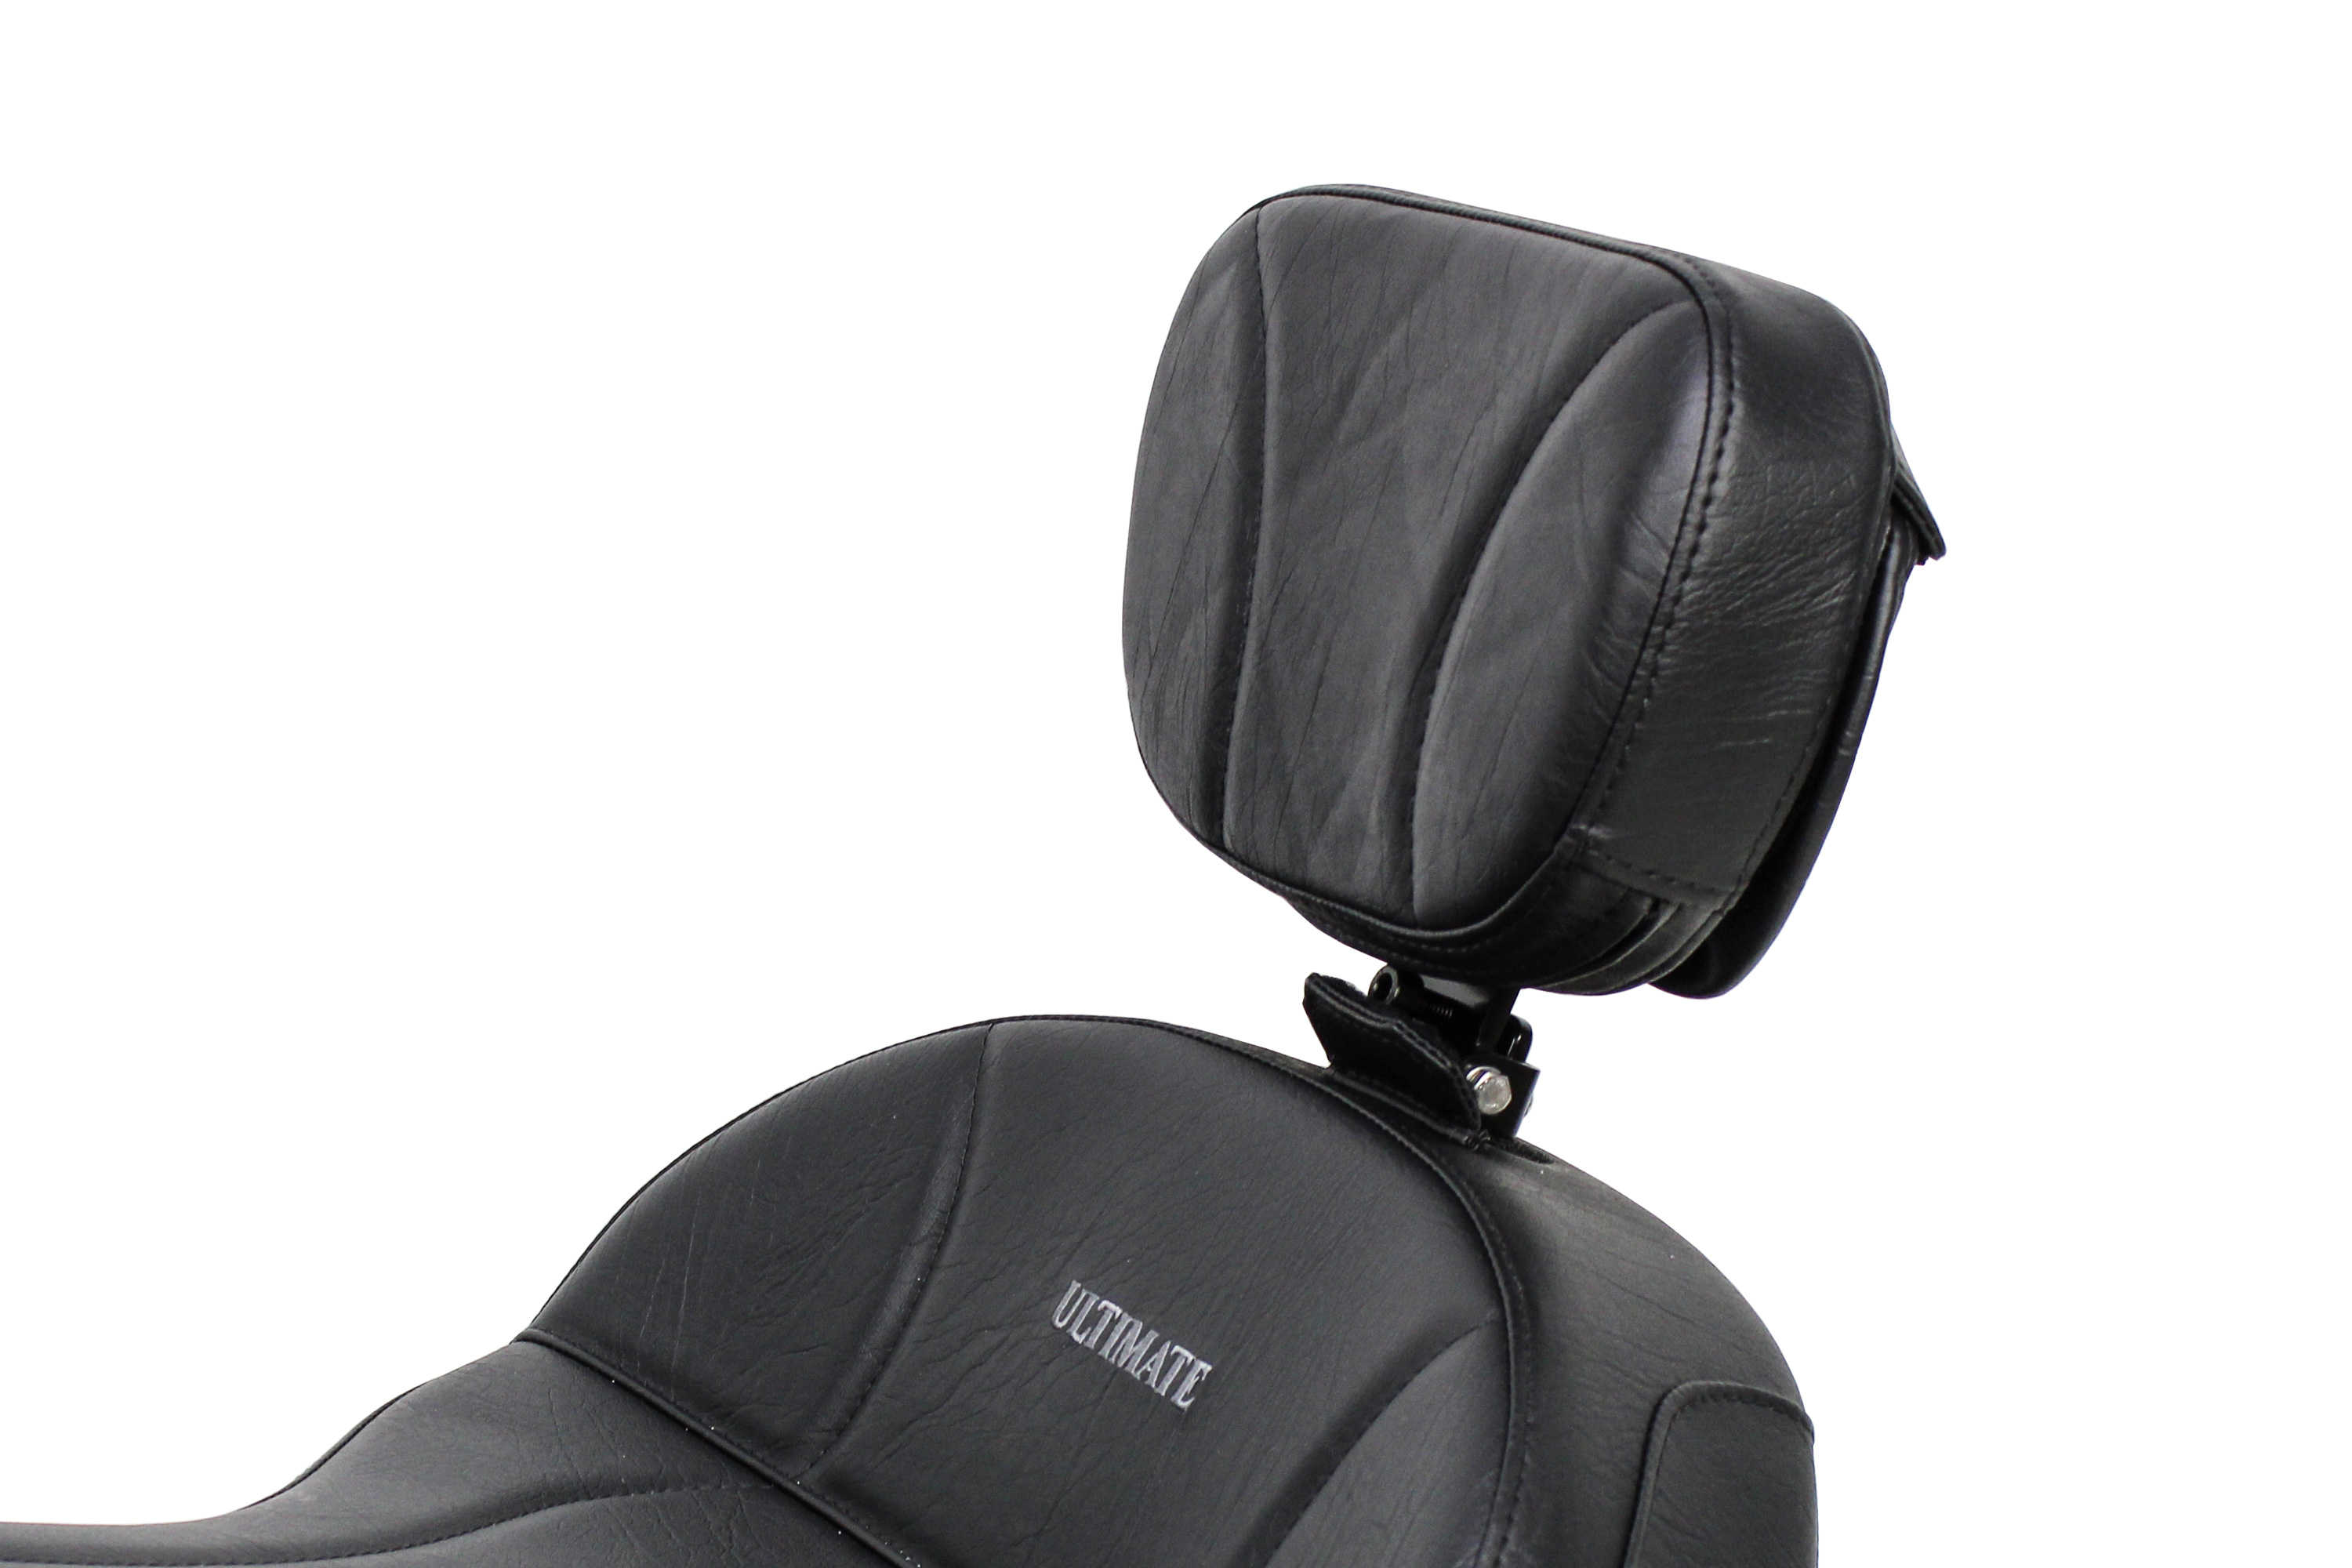 https://ultimateseats.ca/image/catalog/ultimate-driver-backrest-for-vtx-1300-c-1.jpg